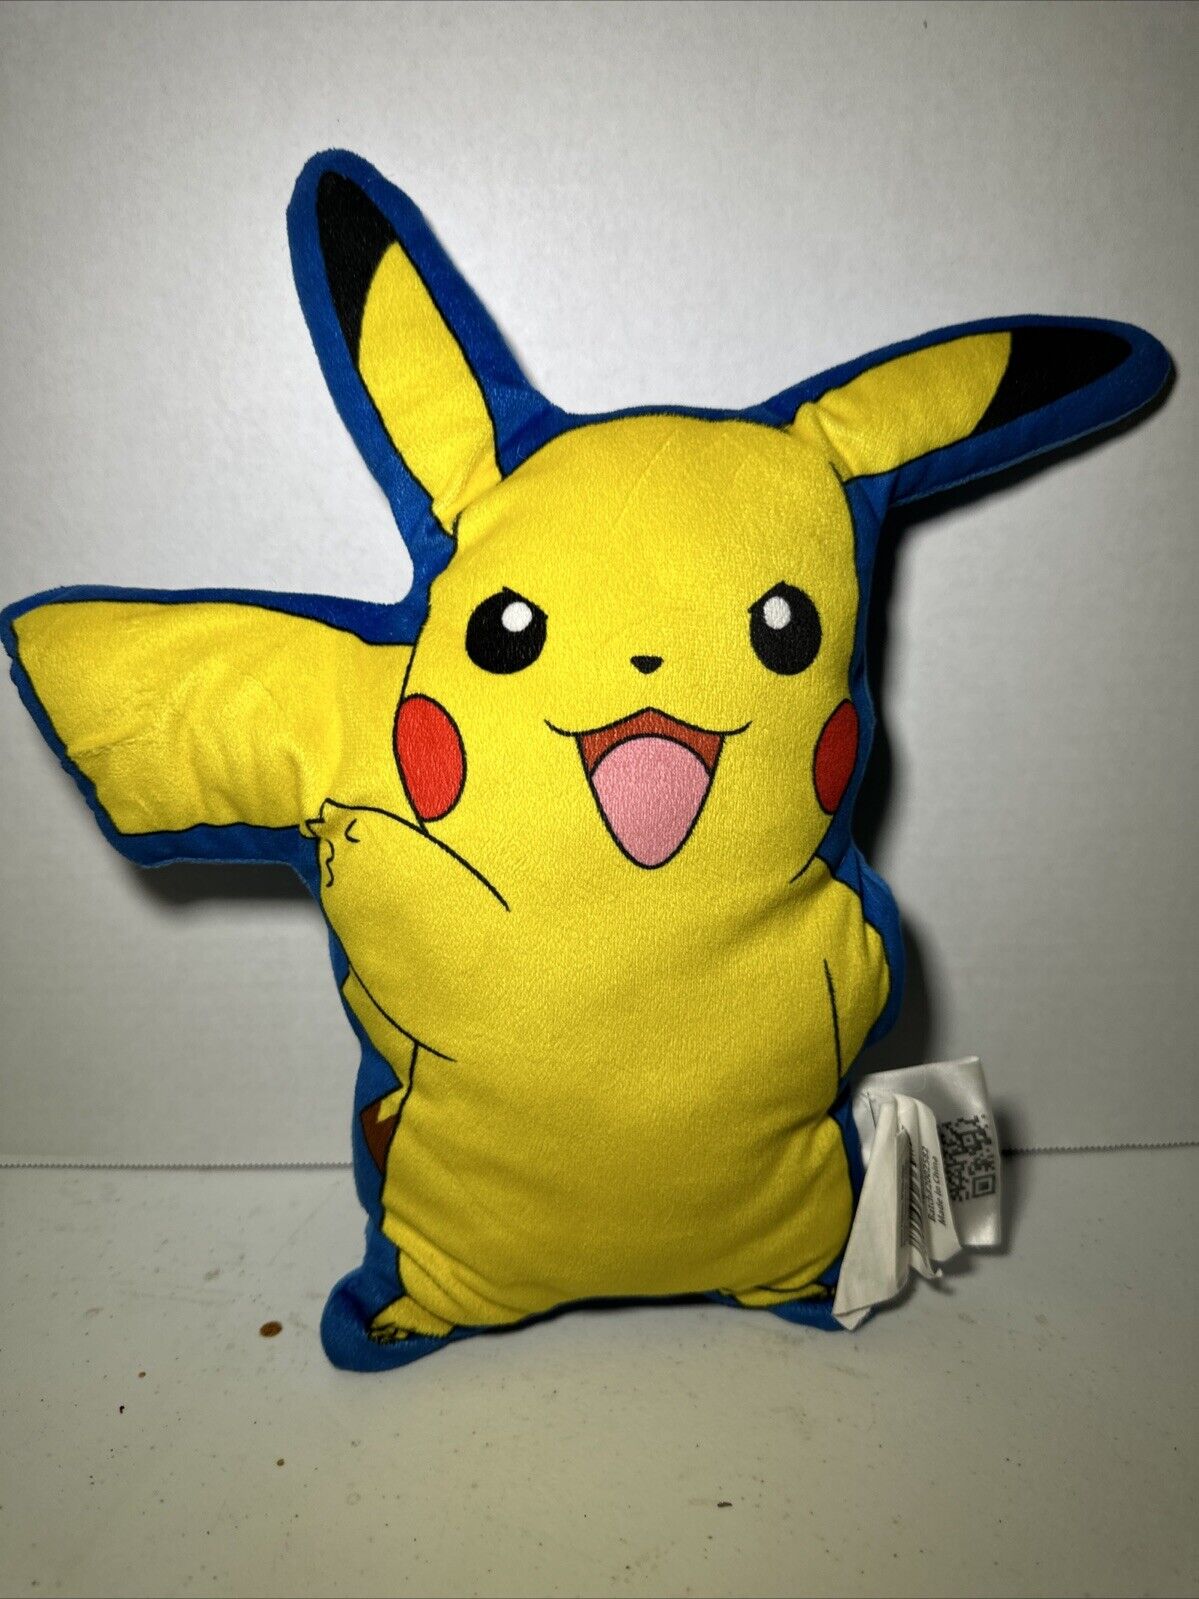 Pokemon 15” PIKACHU Plush Soft Pillow Thumbs Up Northwest Yellow Blue